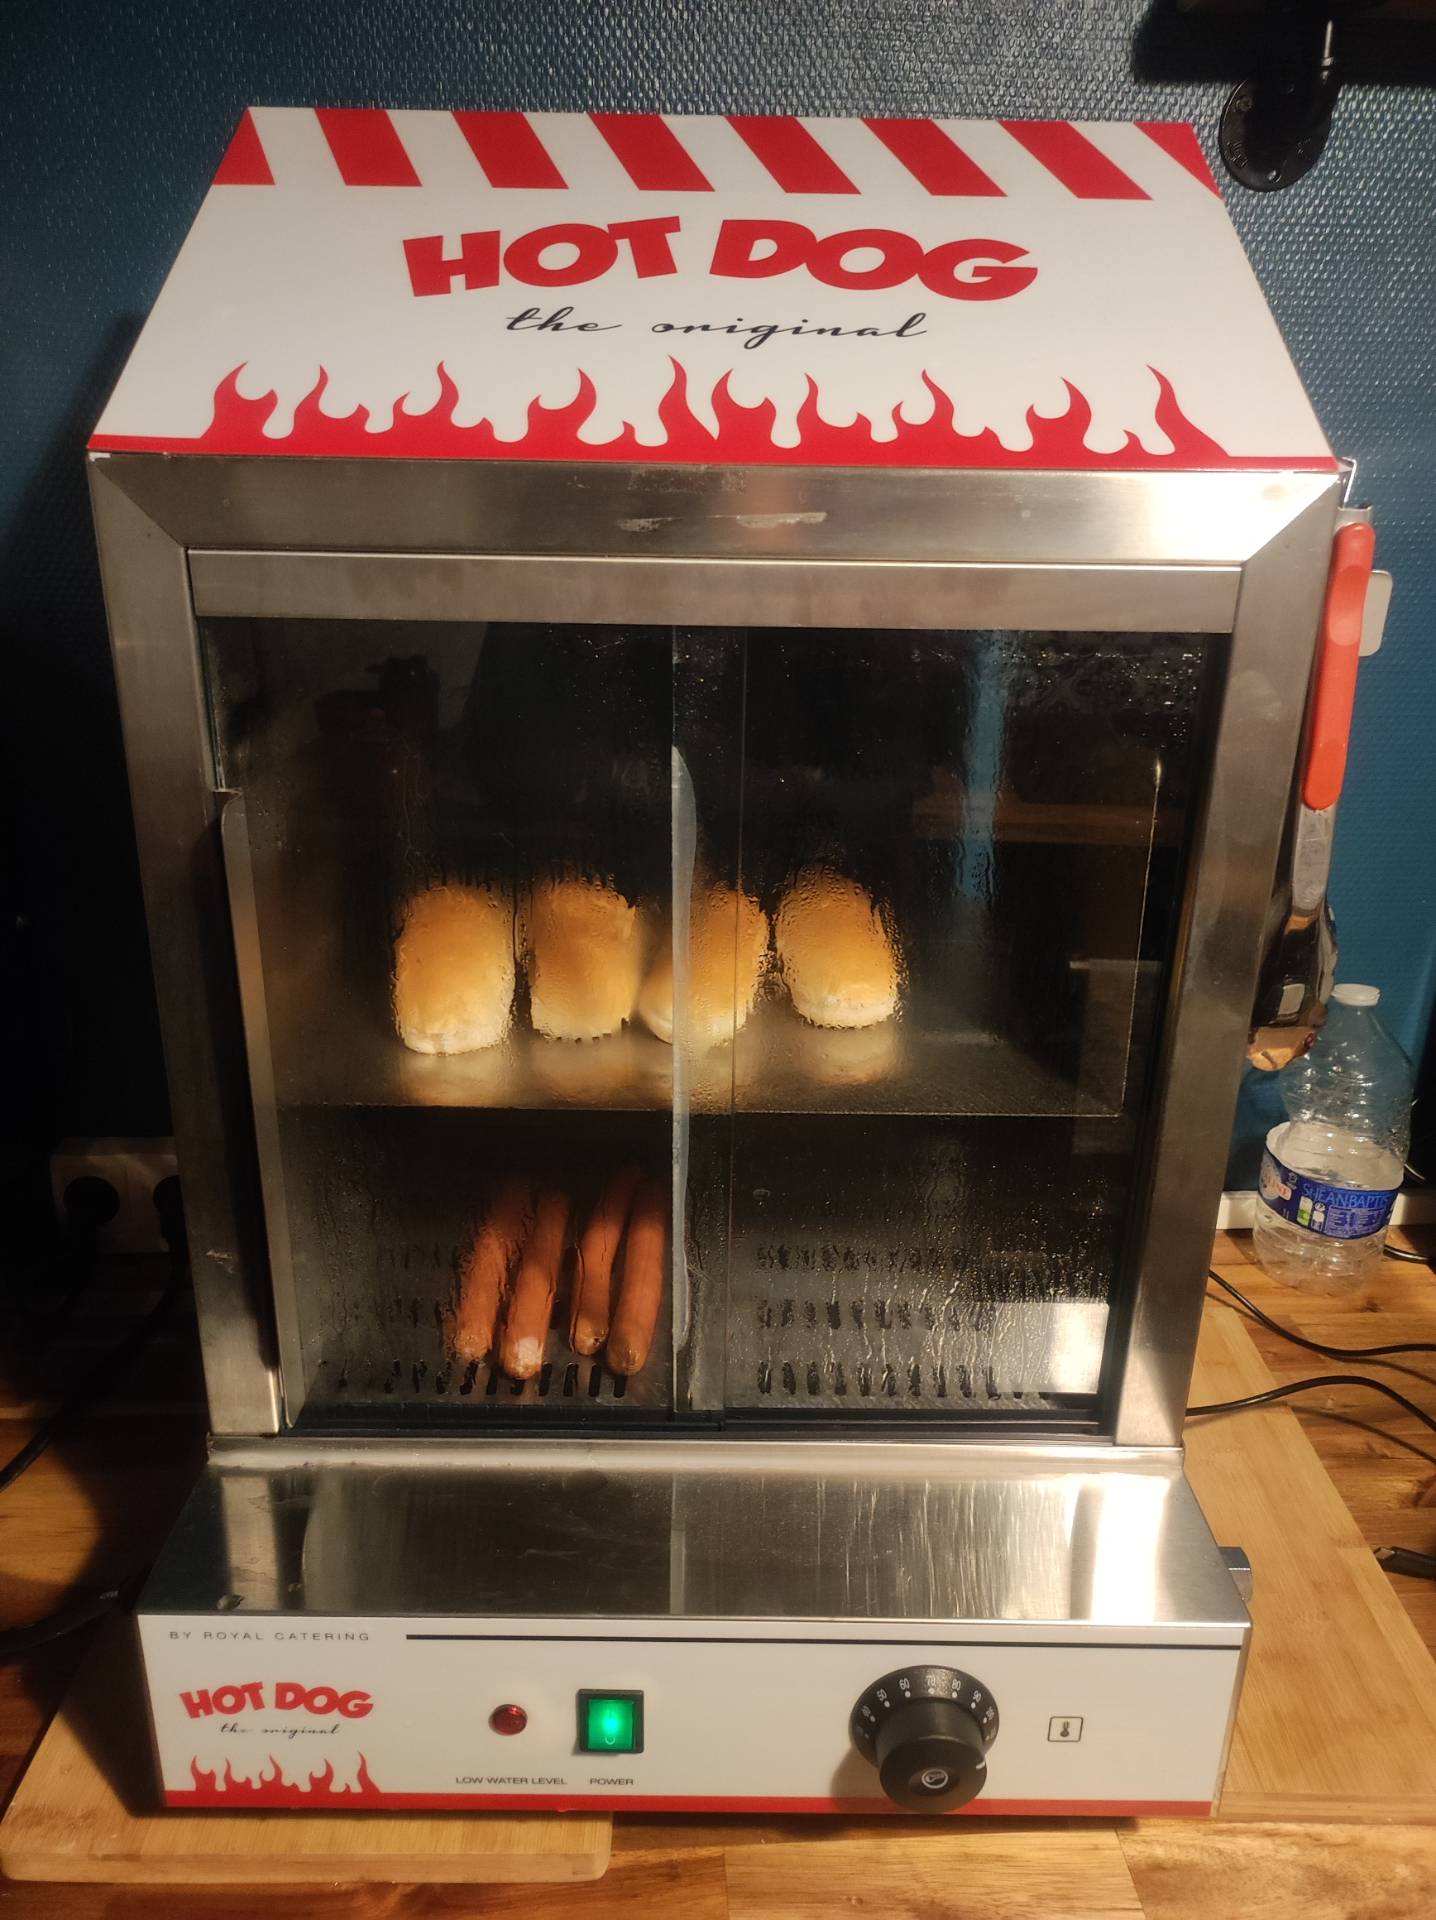 Machine hot dog